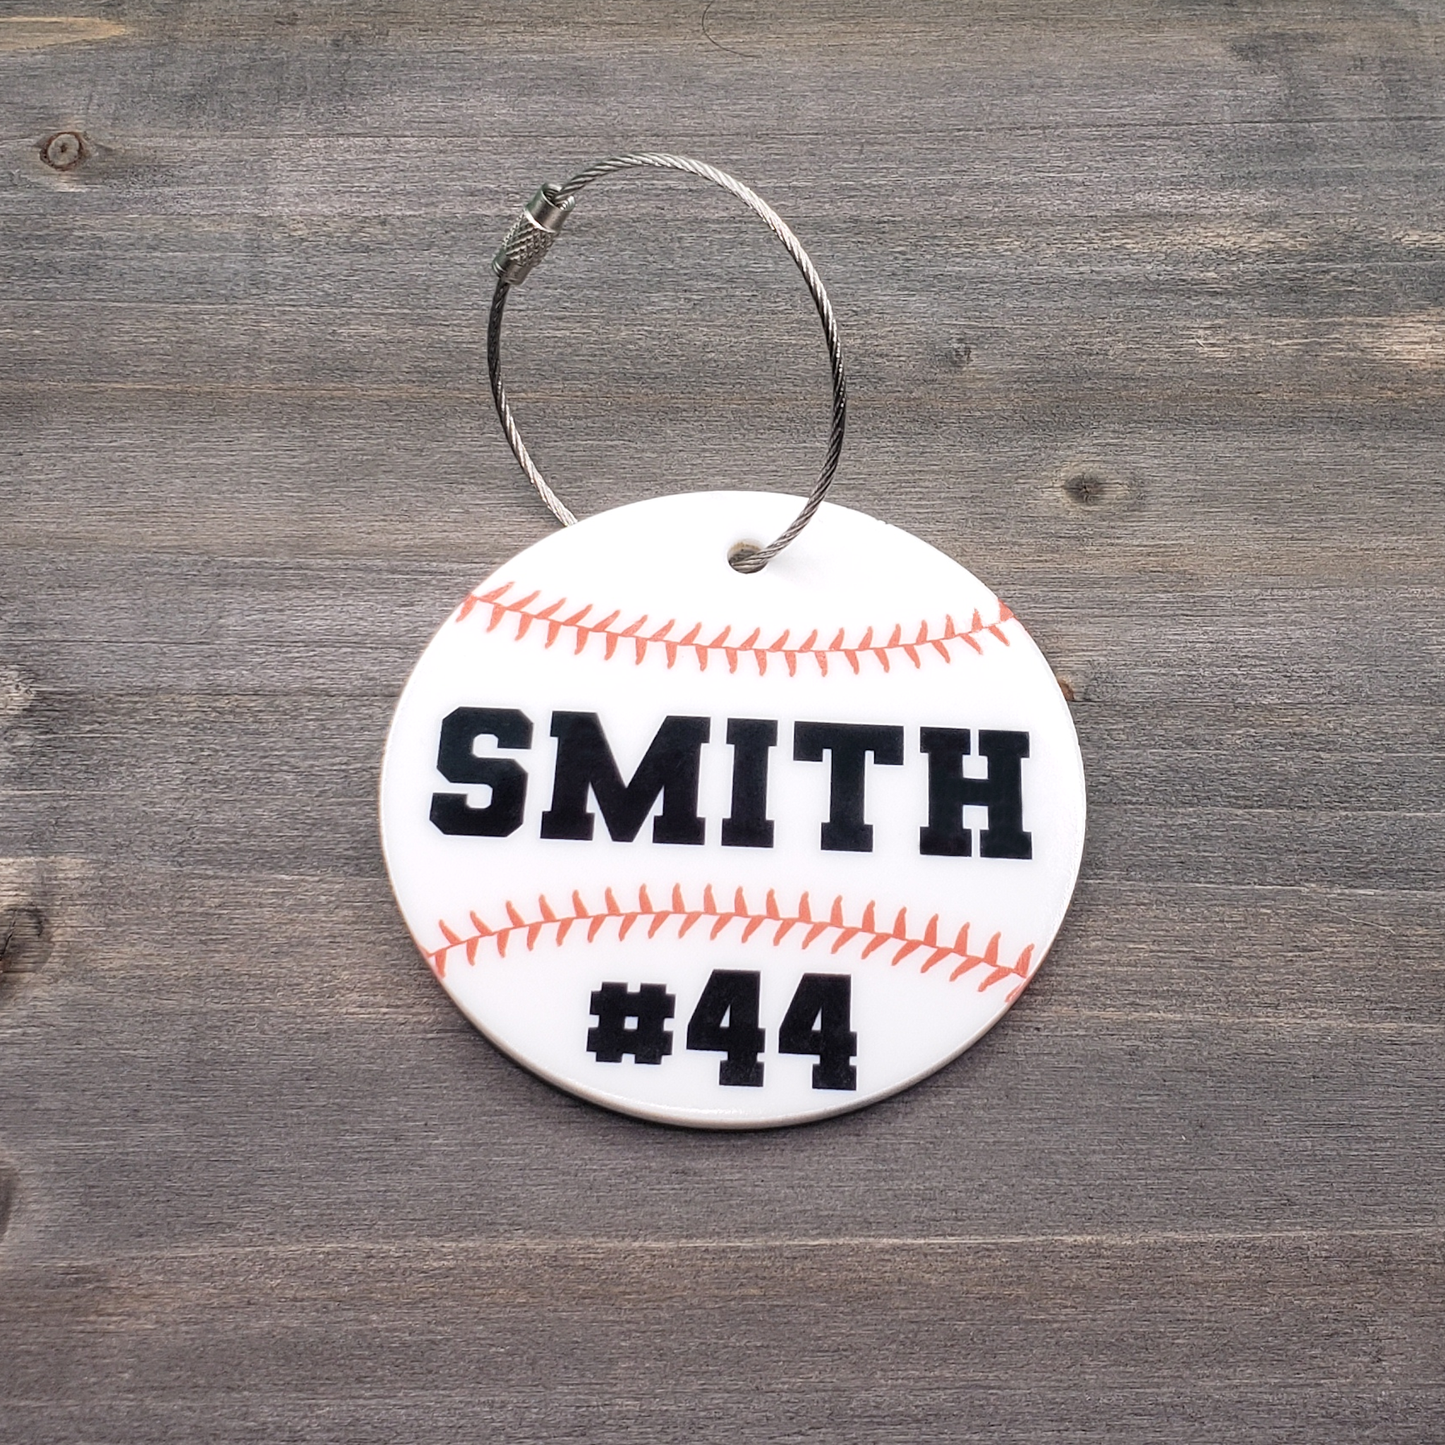 Baseball / Softball Bag Tag - Acrylic - Personalized